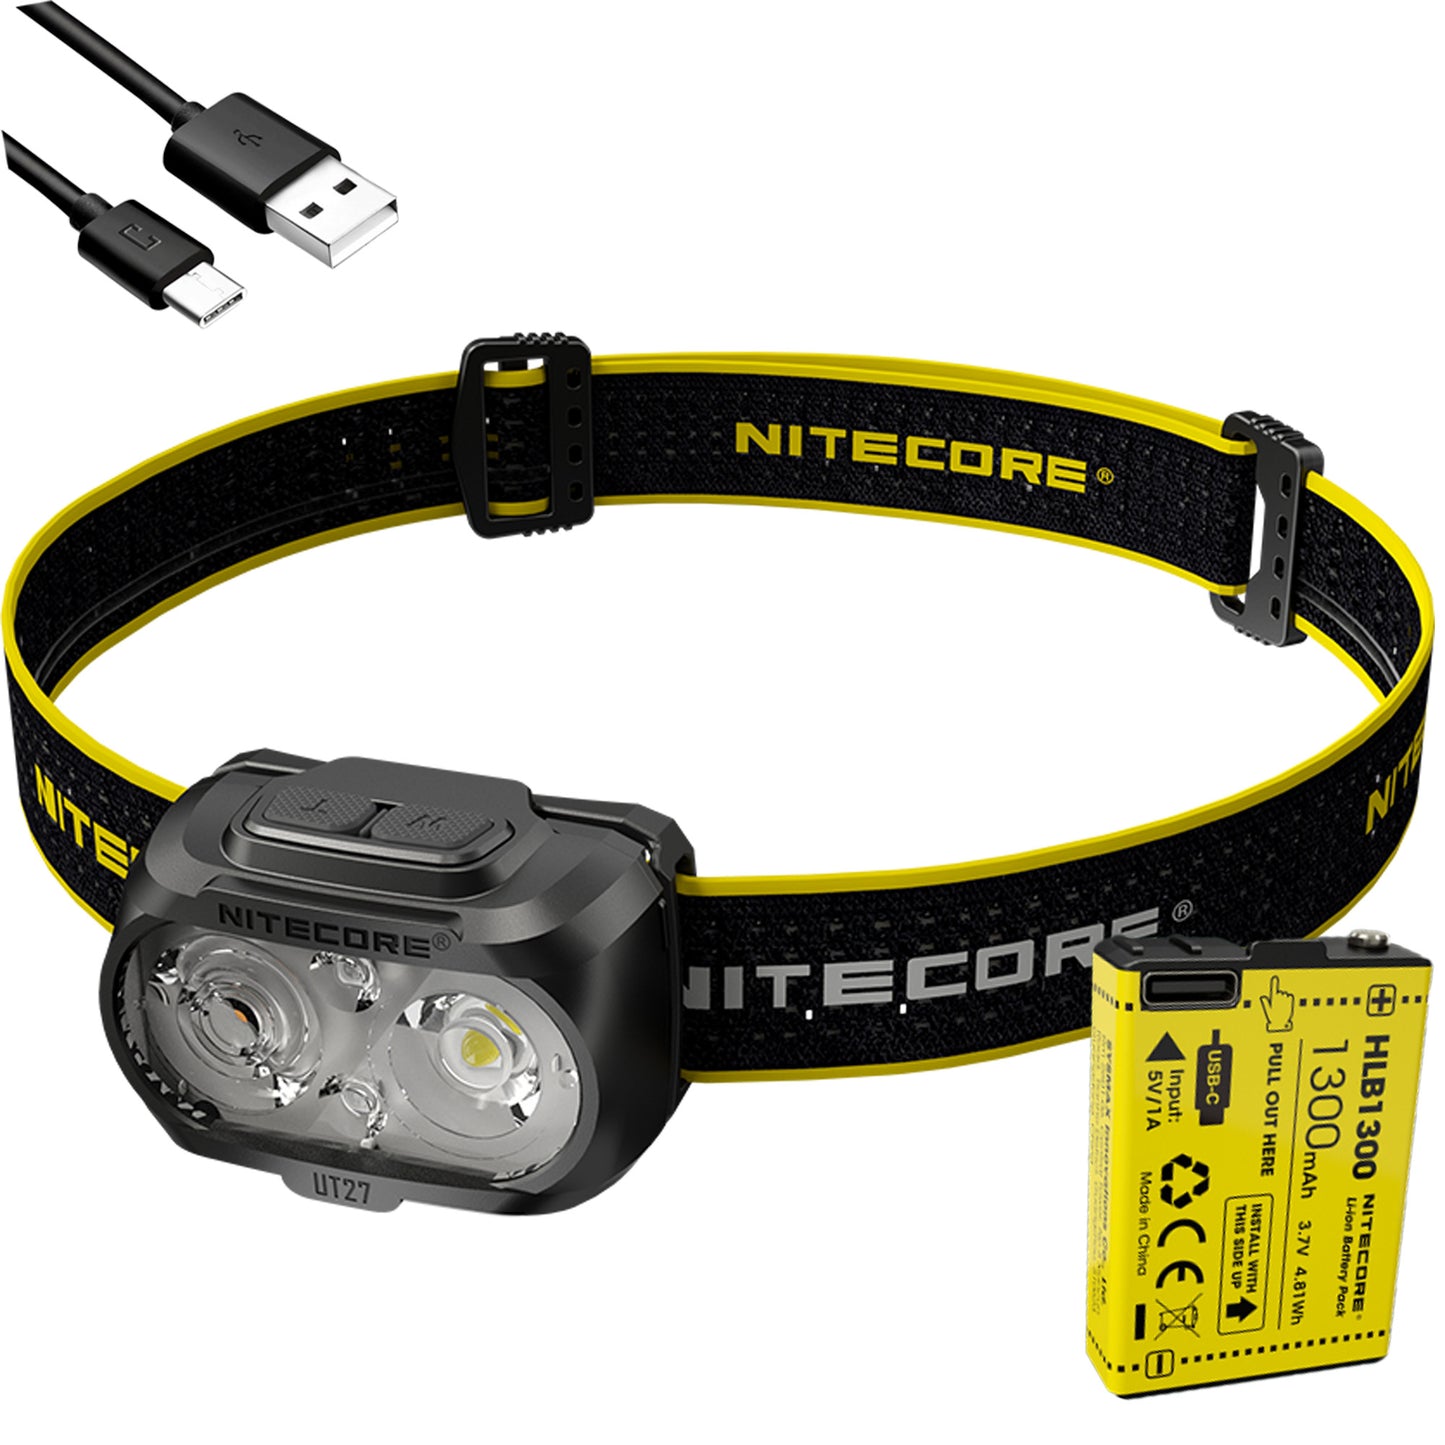 Nitecore UT27 USB Rechargeable Headlamp